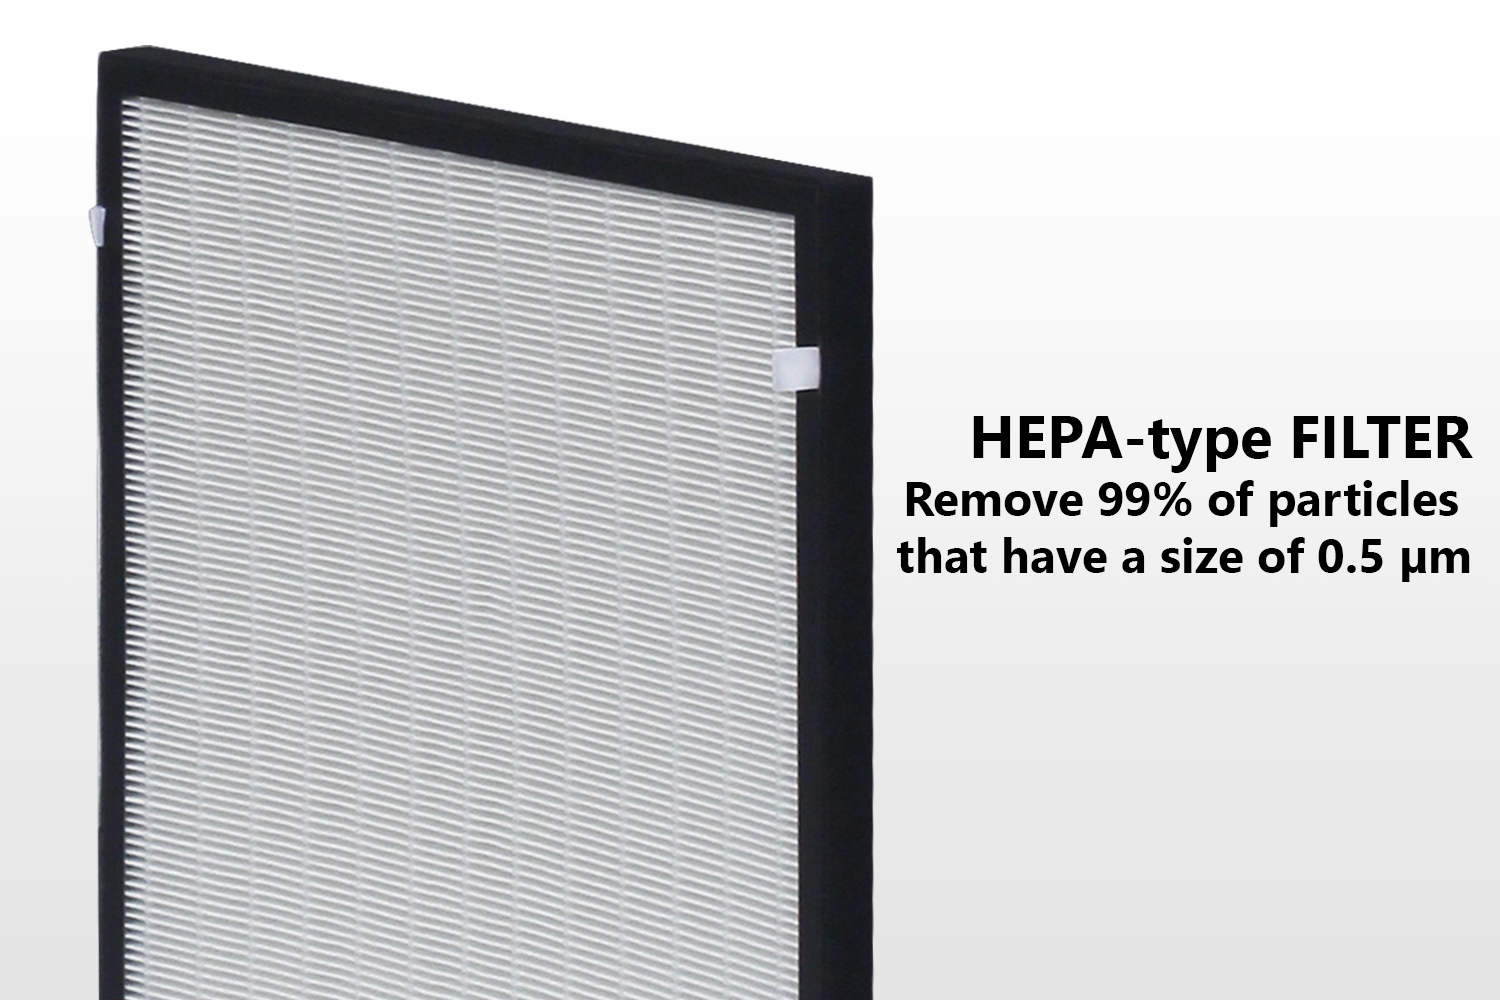 ไส้กรองละเอียด HEPA filter ใช้สำหรับเครื่องฟอกอากศในงานห้องปลอดฝุ่น และห้องปลอดเชื้อ สามารถกรองฝุ่นที่มีความละเอียดสูง ในระดับ PM 2.5 ได้อย่างมีประสิทธิภาพ